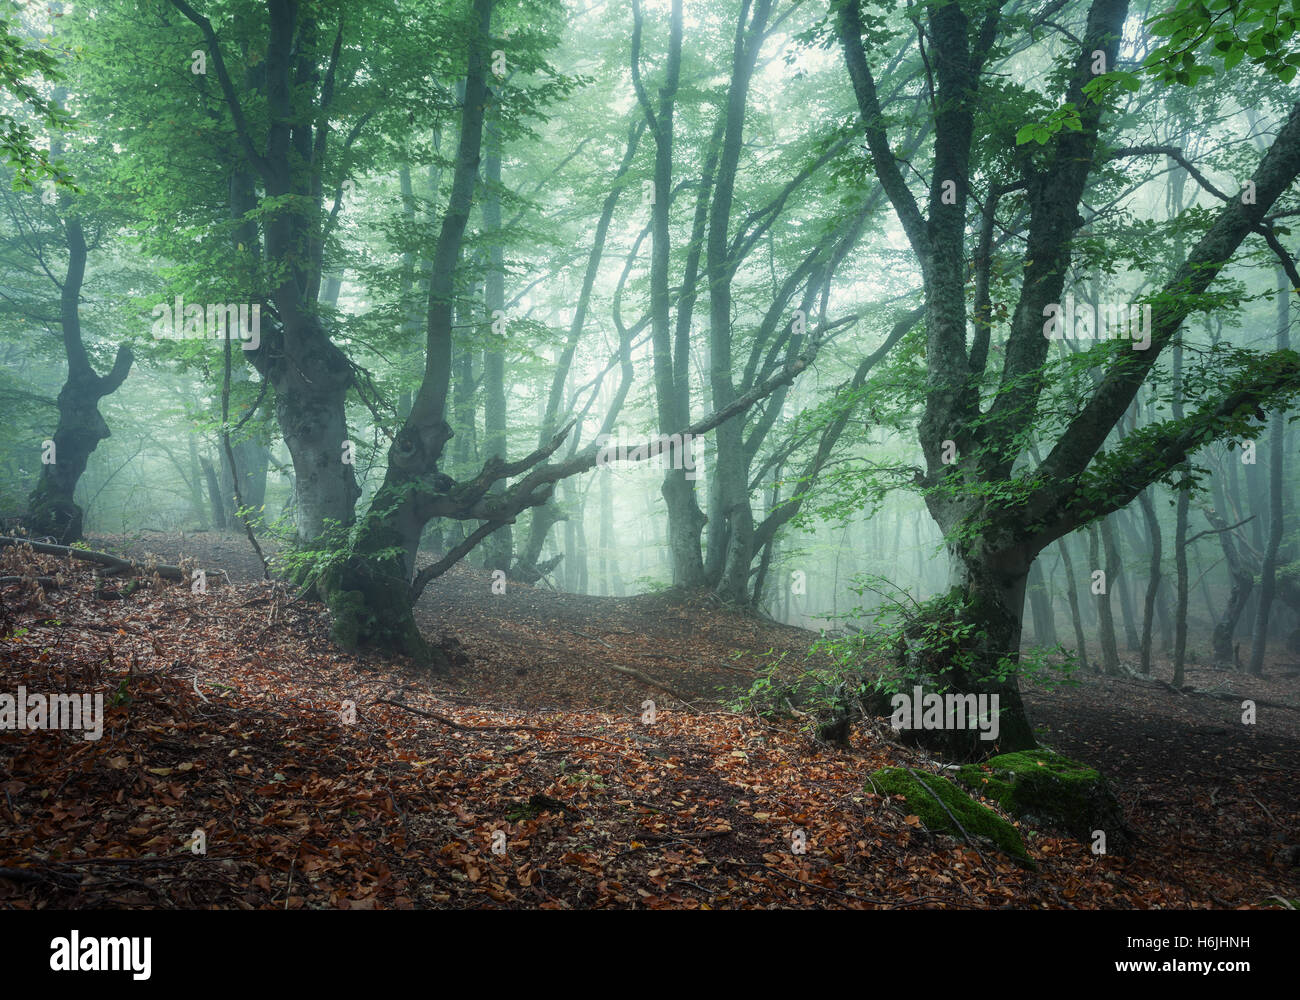 Resorte místico bosque de niebla. Viejos árboles en las nubes. Colorido paisaje con bosque neblinoso, rastro, follaje de color verde y naranja en la CRI Foto de stock